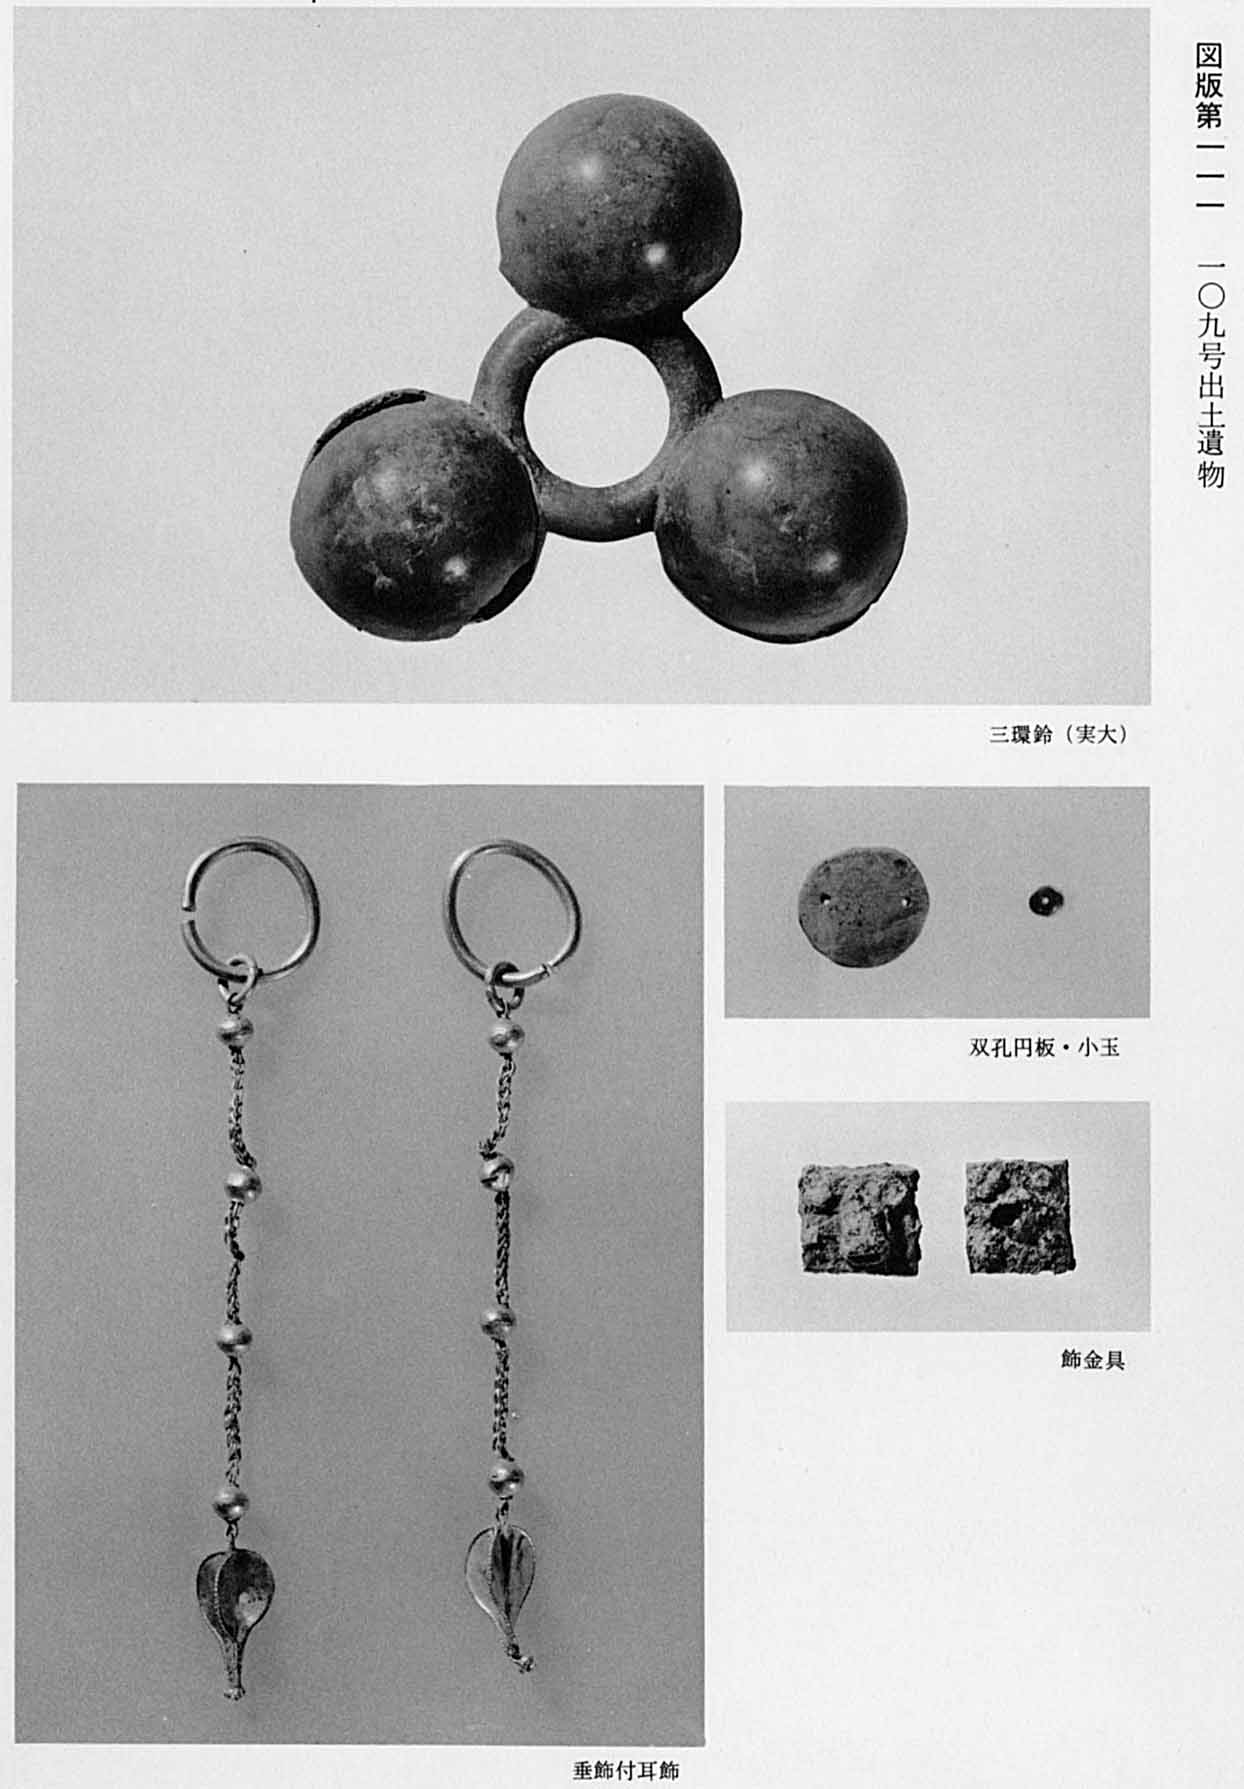 玉が3つ輪で繋がっている鈴と、飾りがたれている古代のイヤリングと、穴が2つ空いている円盤と、正方形の金具がそれぞれ撮影されている、図版111 109号遺物出土遺物のモノクロ写真